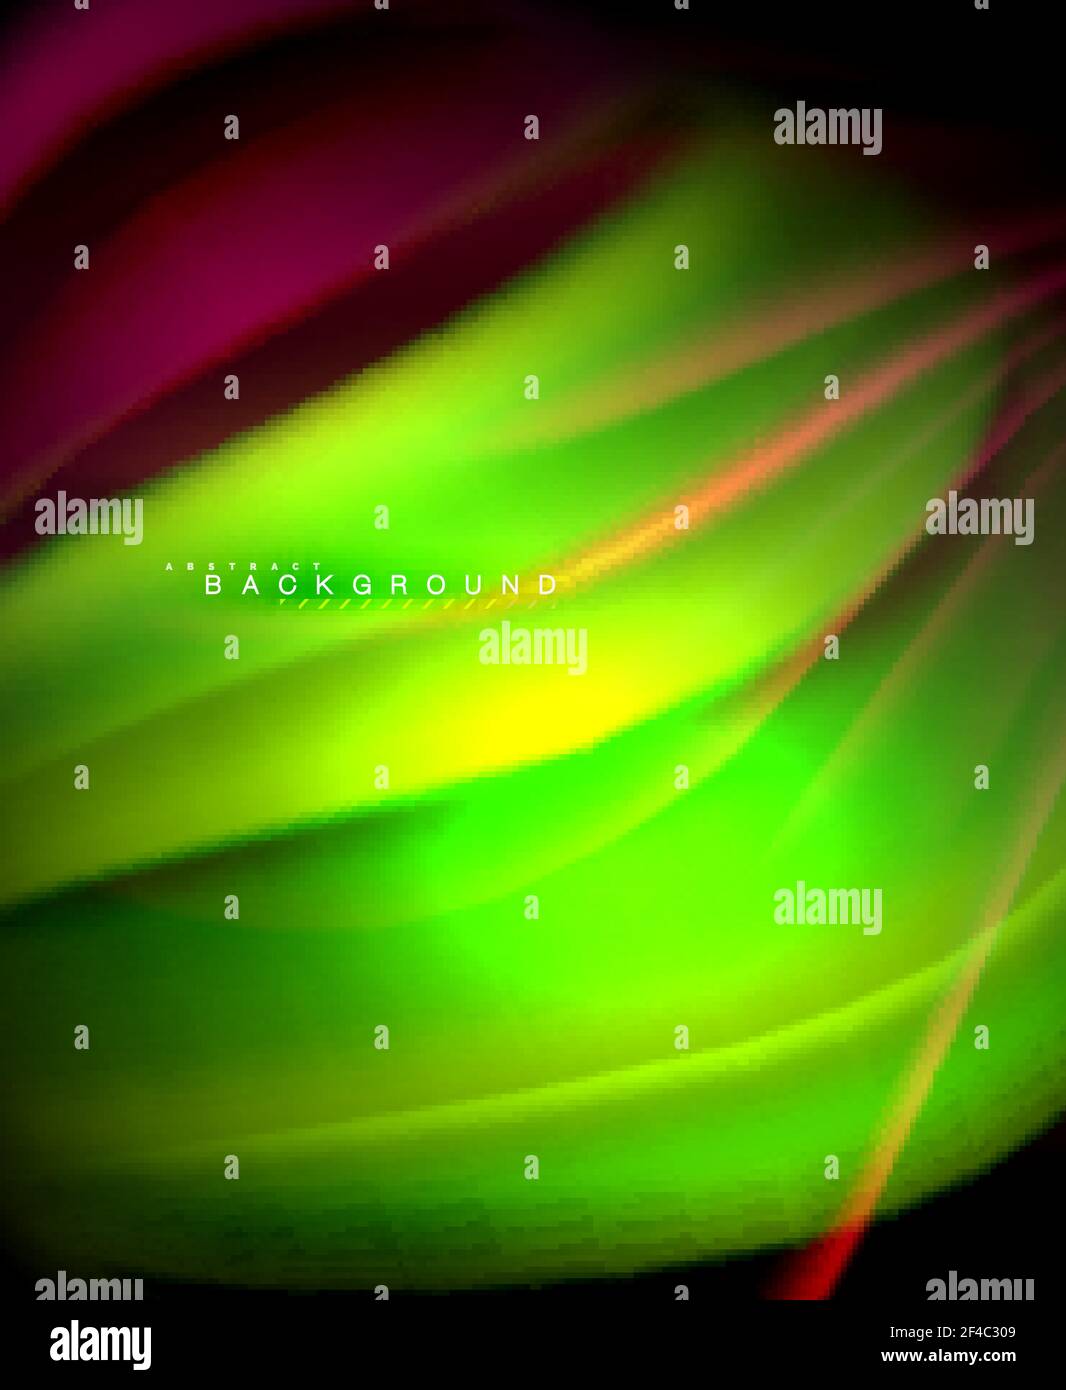 Ulografica al neon onda di colore fluido per web, sfondo, motivo, texture e sfondo. Ulografica al neon onda di colore fluido per web, sfondo, motivo, texture e sfondo. Illustrazione vettoriale Illustrazione Vettoriale